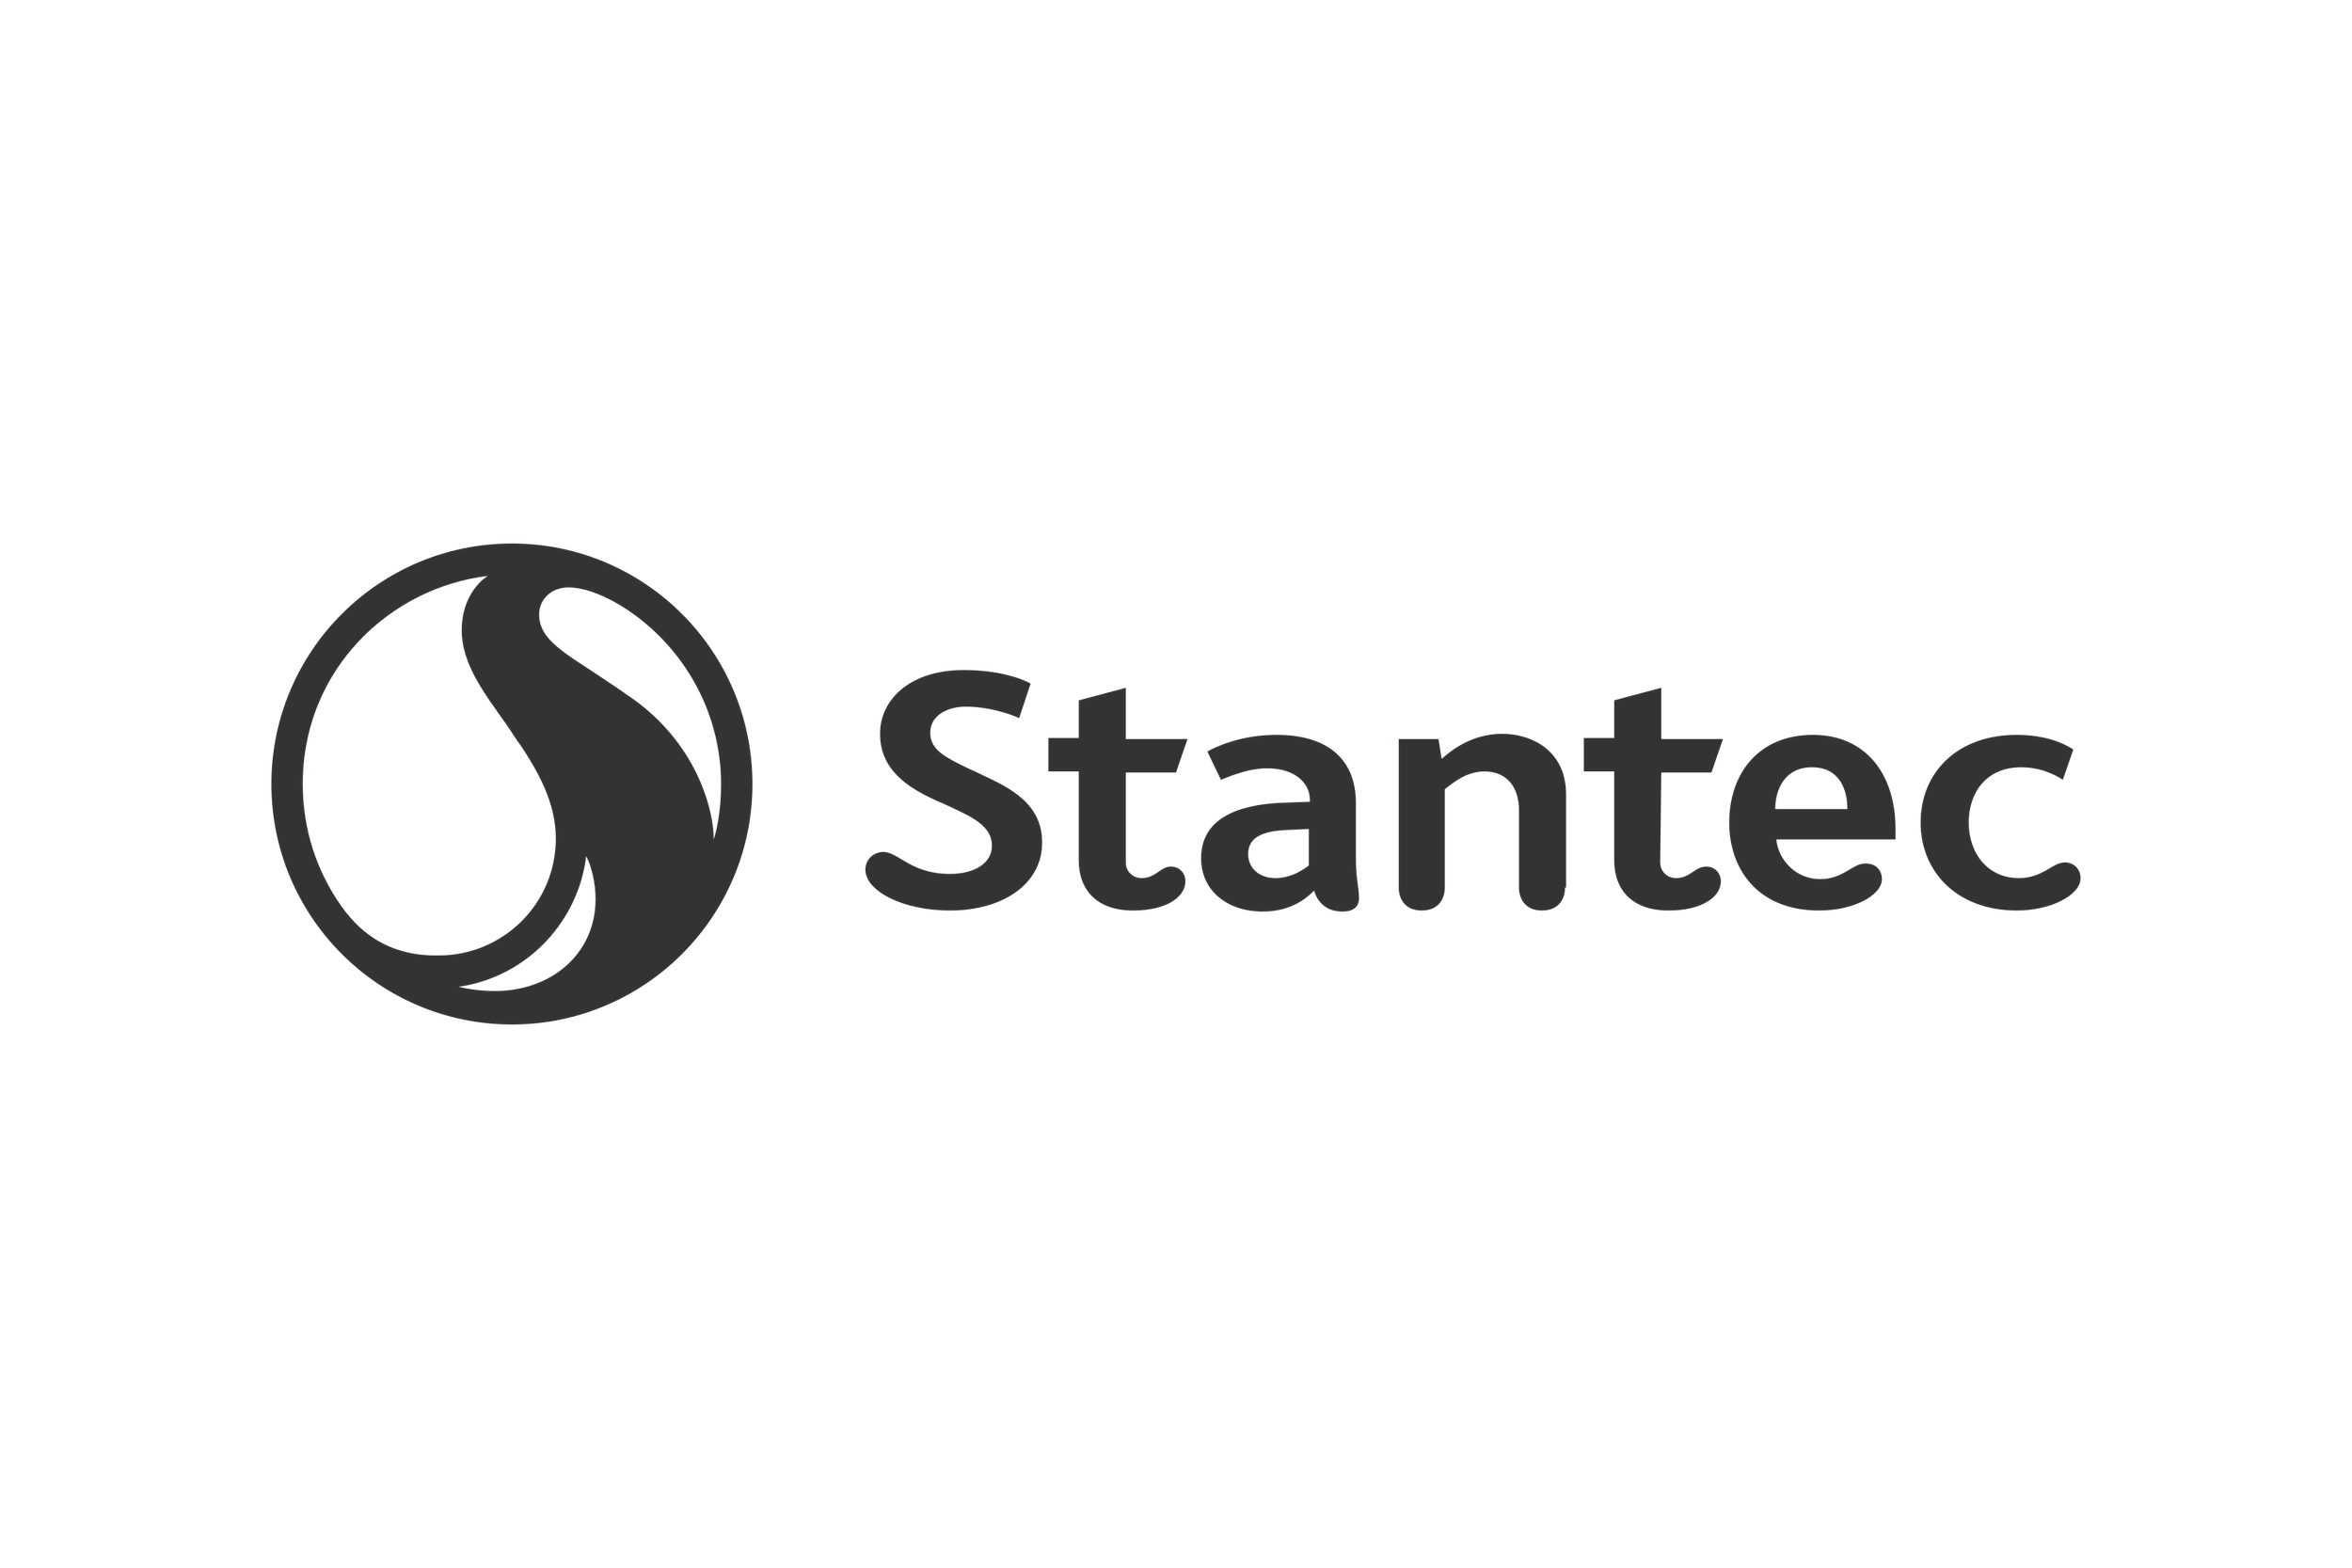 Stantec company logo